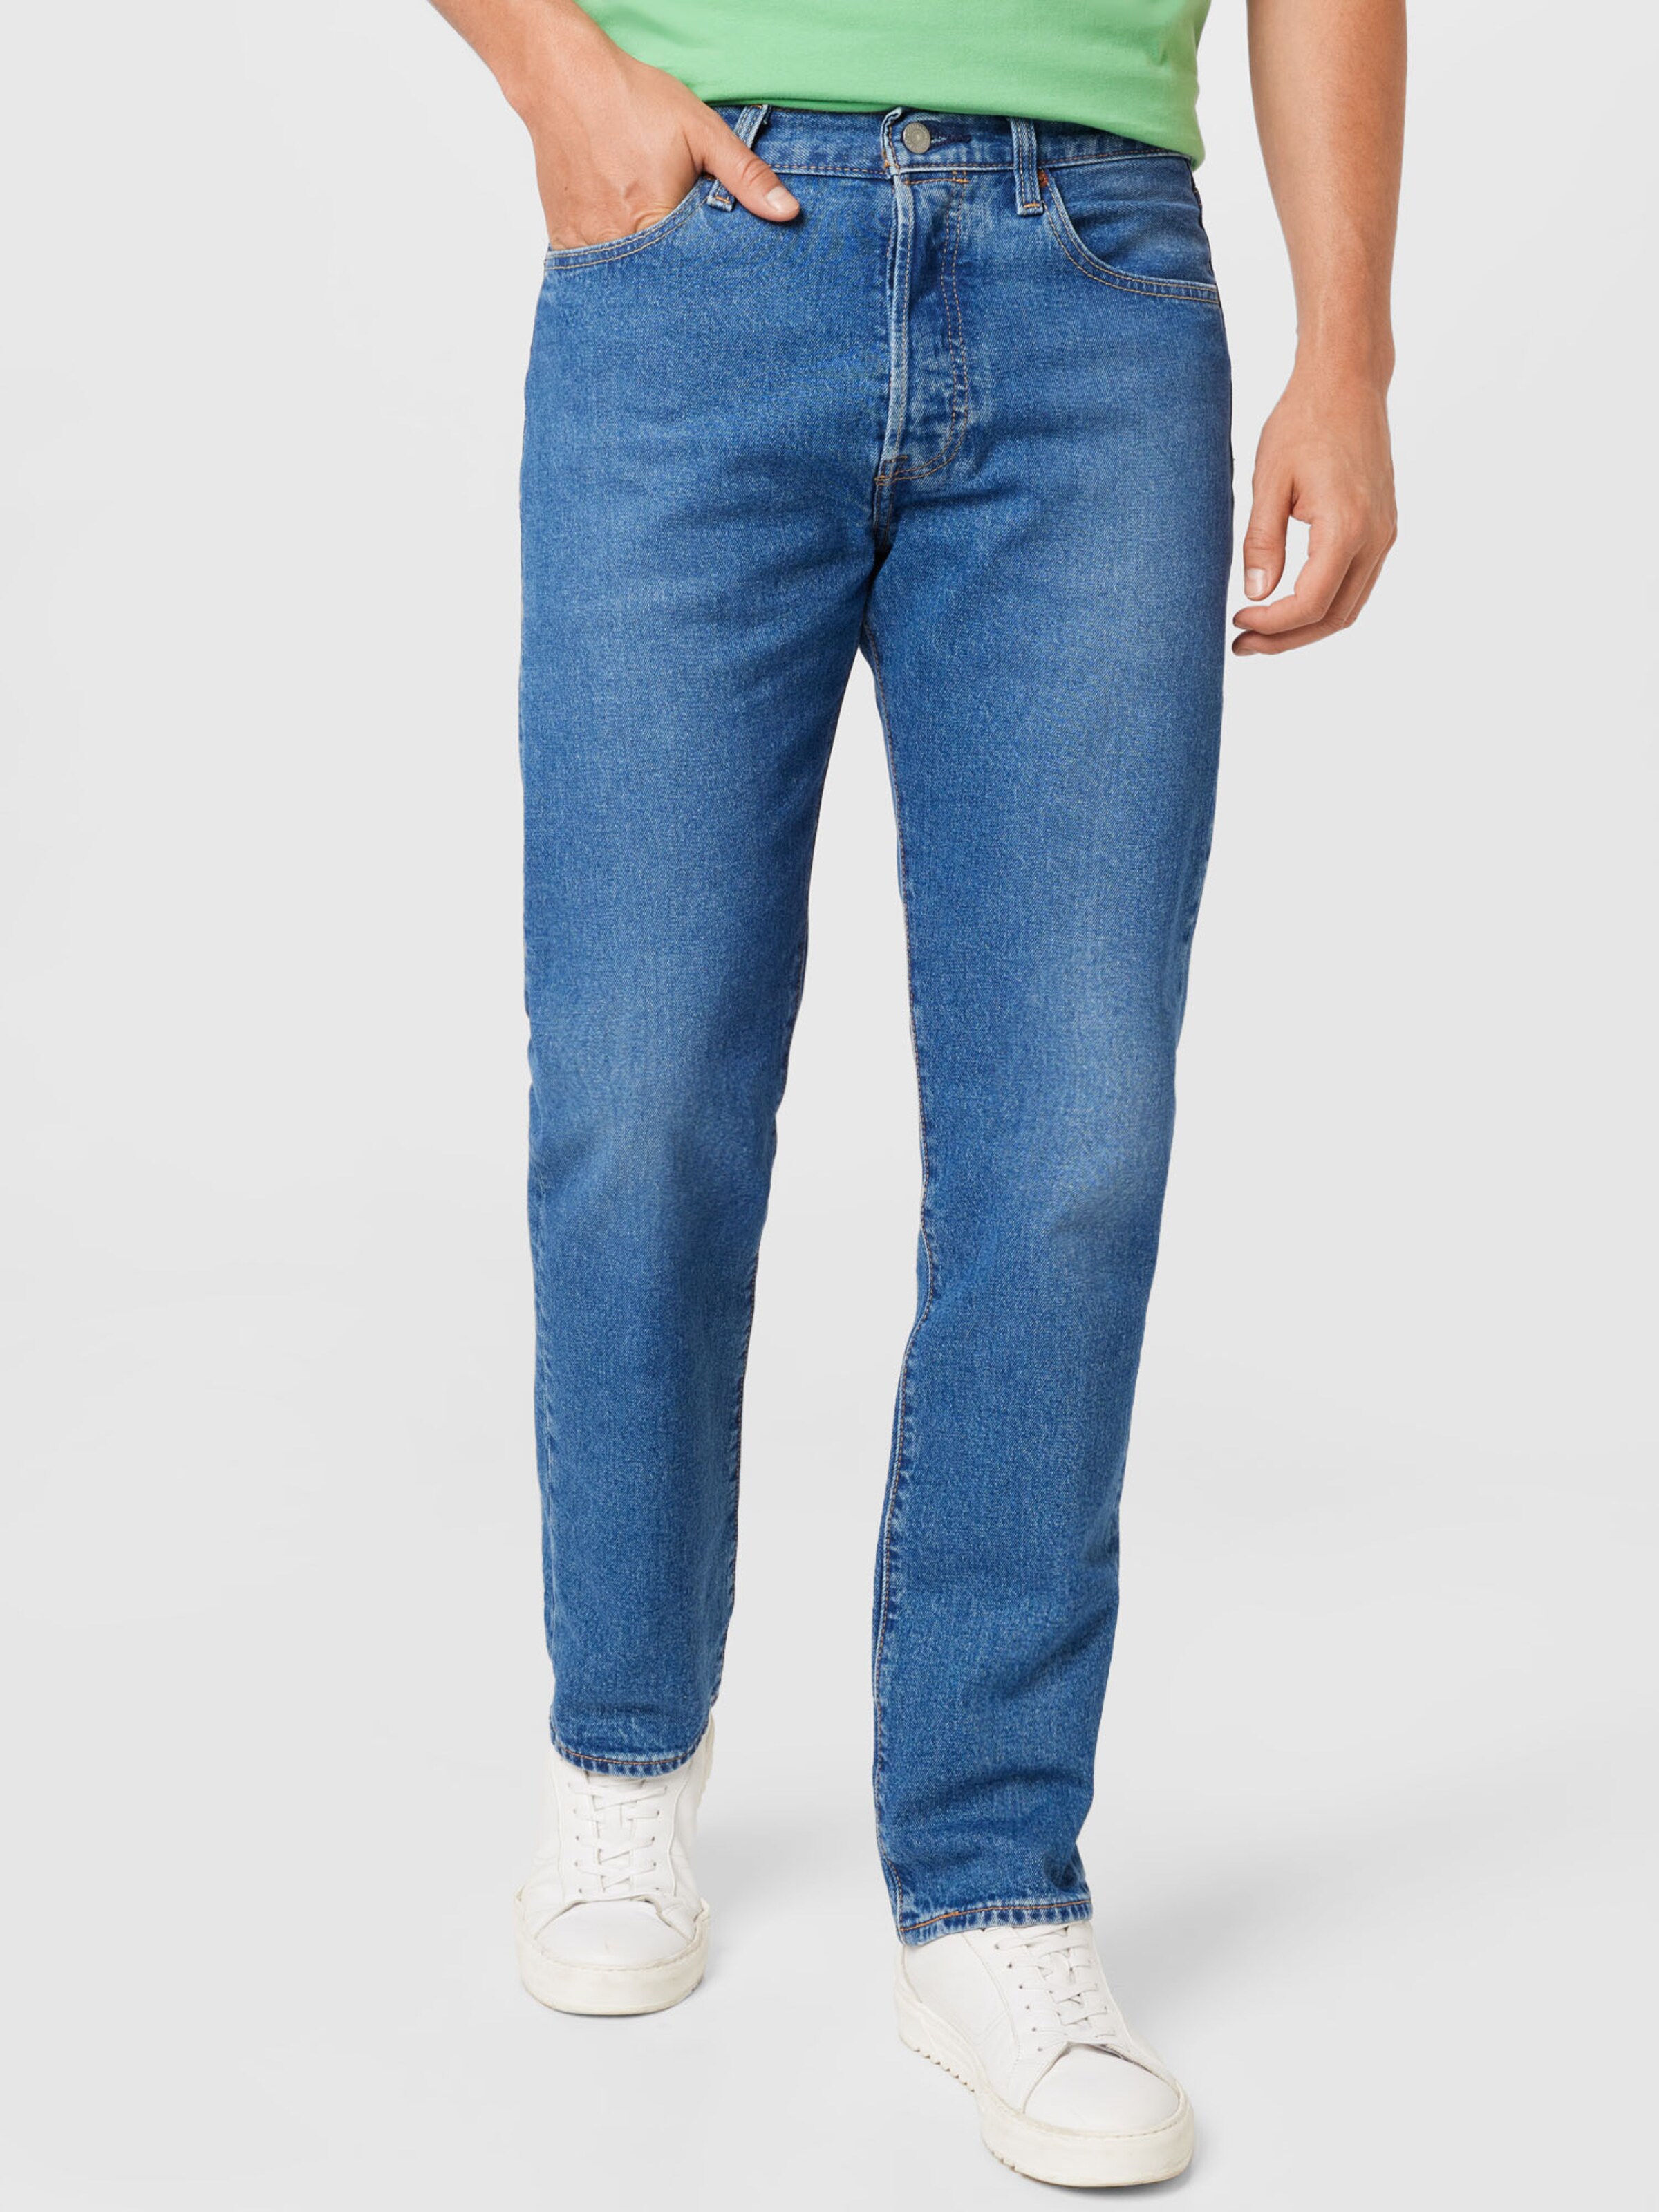 Jeans Doc Brando ABOUT YOU Uomo Abbigliamento Pantaloni e jeans Jeans Jeans slim & sigaretta 